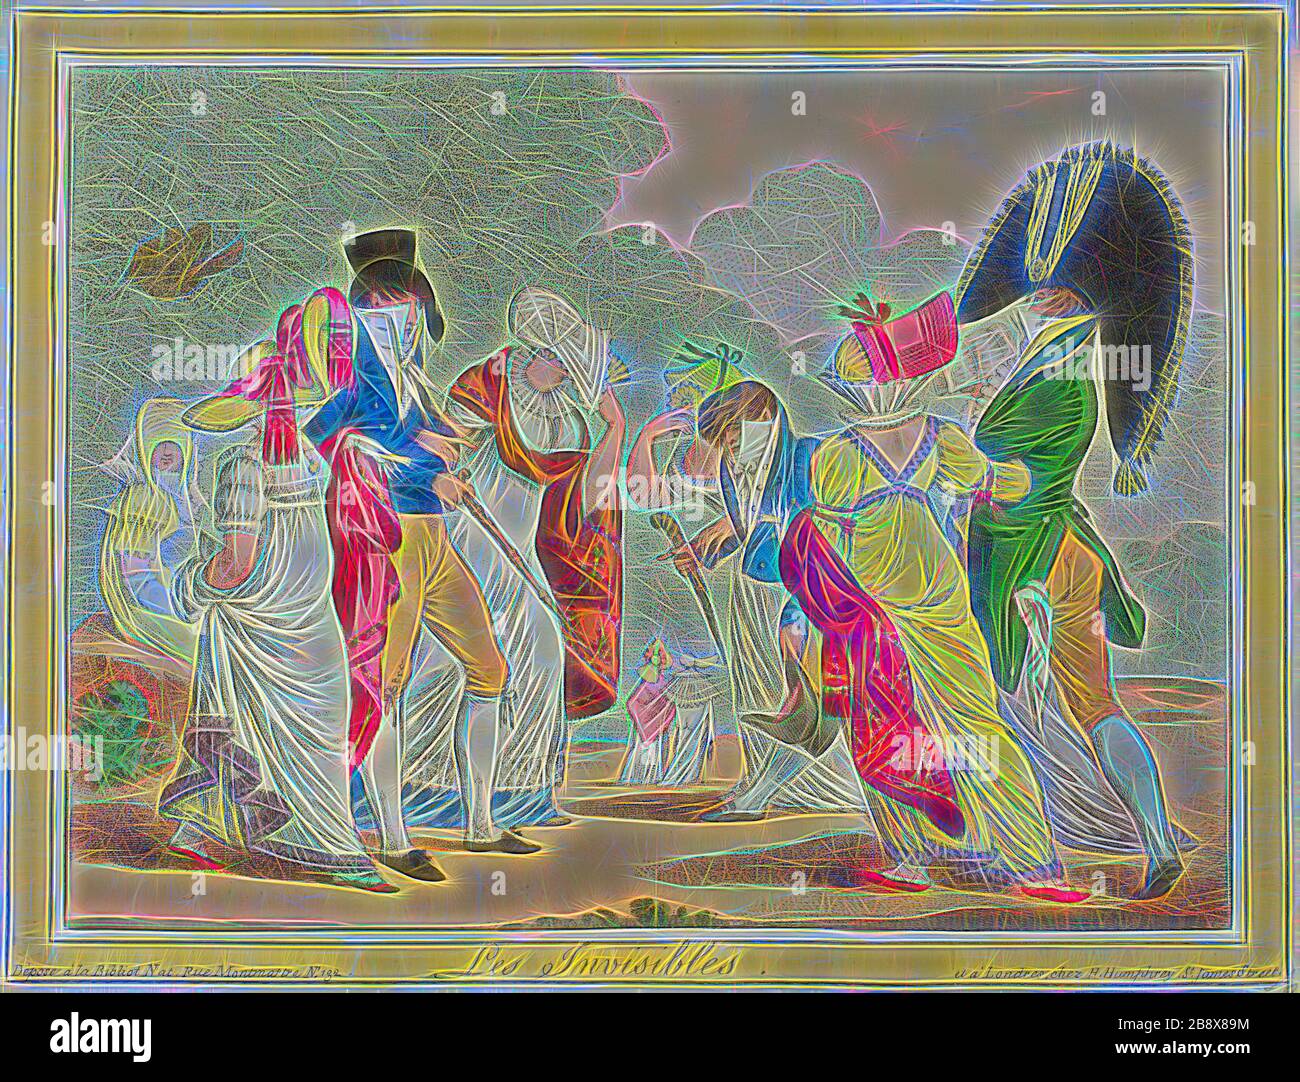 Les Invisibles, 1810, James Gillray (Englisch, 1756-1815), herausgegeben von Hannah Humphrey (Englisch, ca. 1745-186), England, handfarbige Radierung auf Elfenbeinwobenpapier, 235 × 310 mm (Bild), 243 × 315 mm (Platte/Blatt), von Gibon neu vorgestellt, Design von warmfröhlichem Leuchten von Helligkeit und Lichtstrahlen. Klassische Kunst mit moderner Note neu erfunden. Fotografie, inspiriert vom Futurismus, die dynamische Energie moderner Technologie, Bewegung, Geschwindigkeit und Kultur revolutionieren. Stockfoto